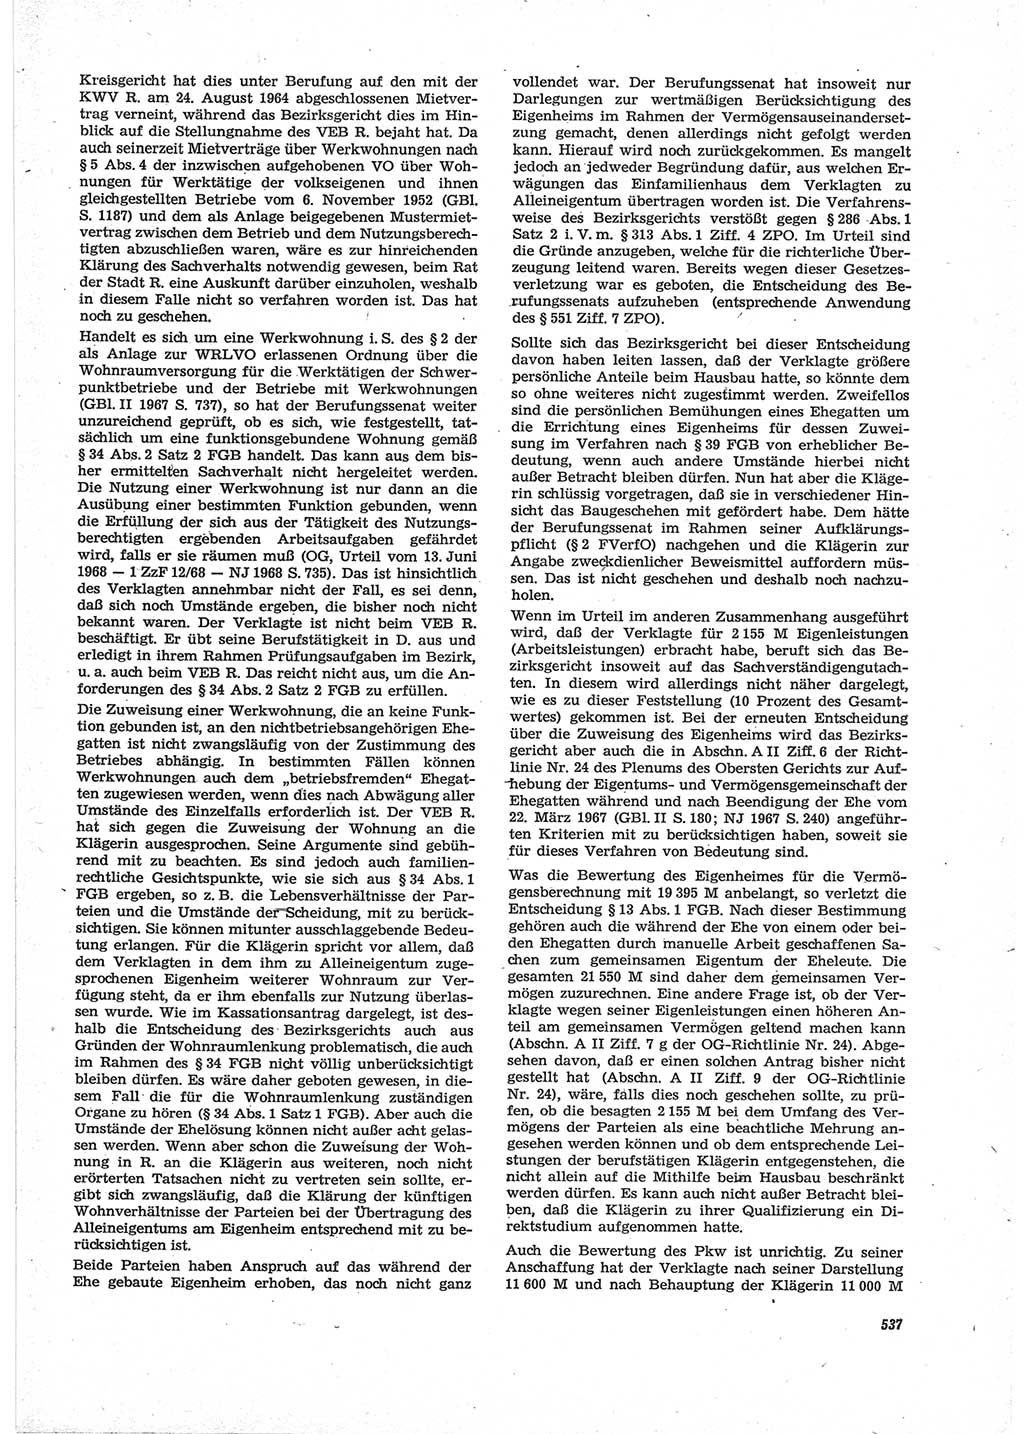 Neue Justiz (NJ), Zeitschrift für Recht und Rechtswissenschaft [Deutsche Demokratische Republik (DDR)], 28. Jahrgang 1974, Seite 537 (NJ DDR 1974, S. 537)